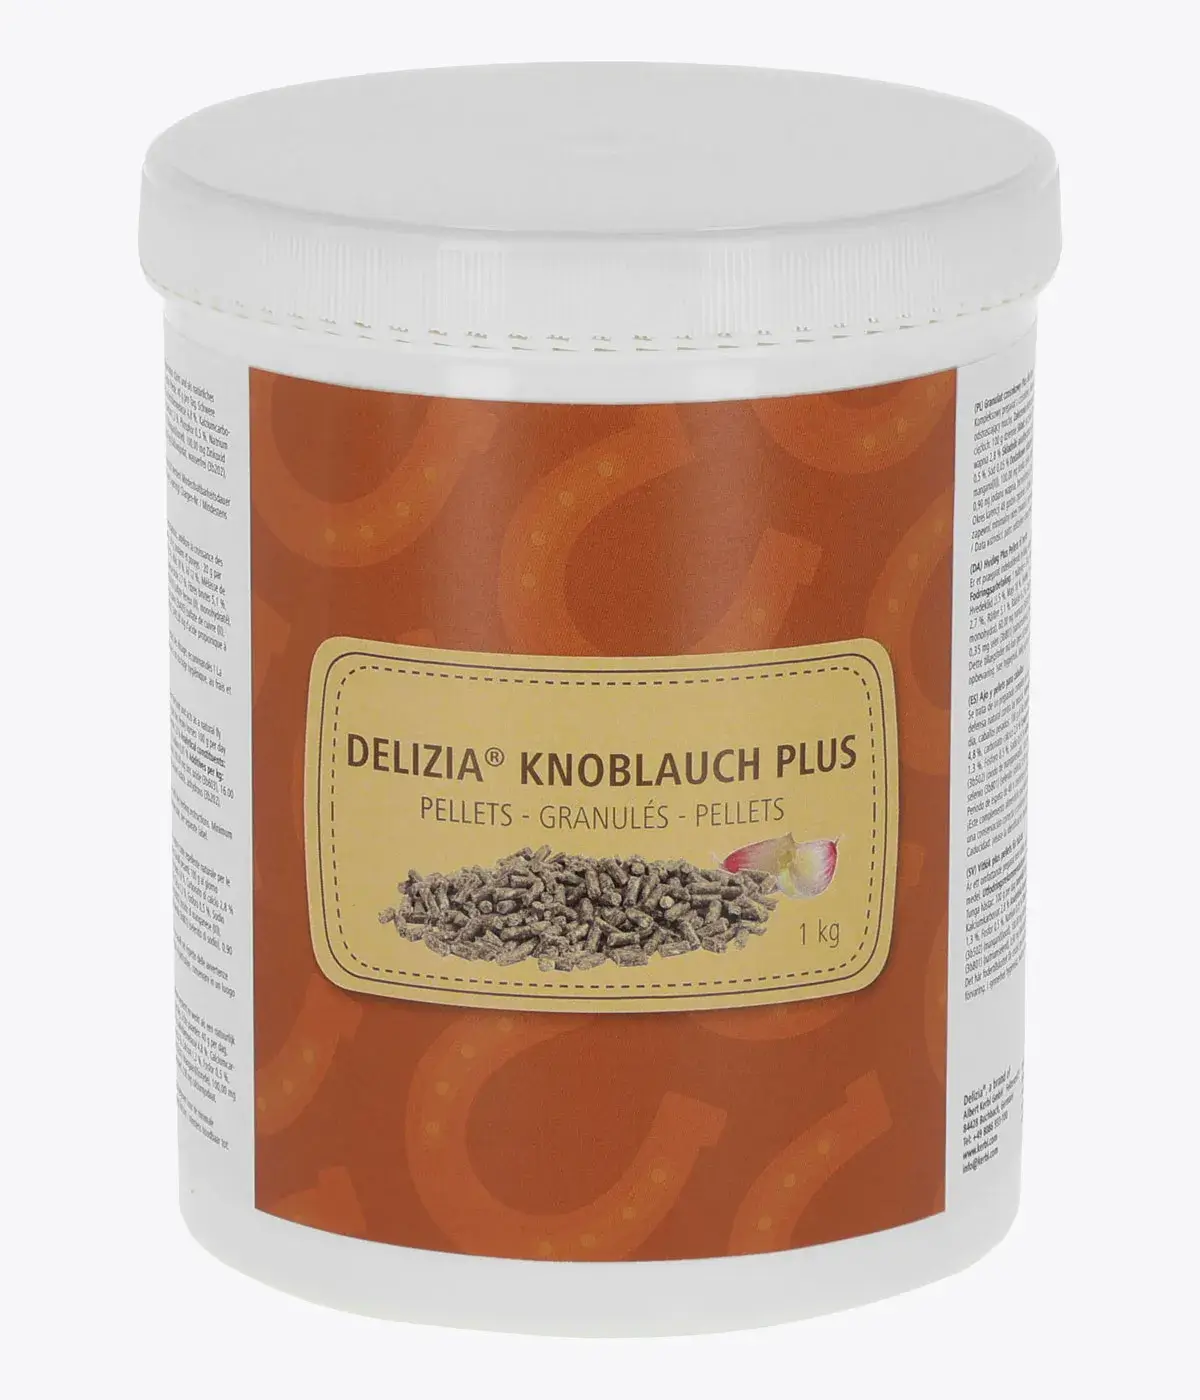 KERBL Delizia® Knoblauch Plus Pellets 1kg Dose